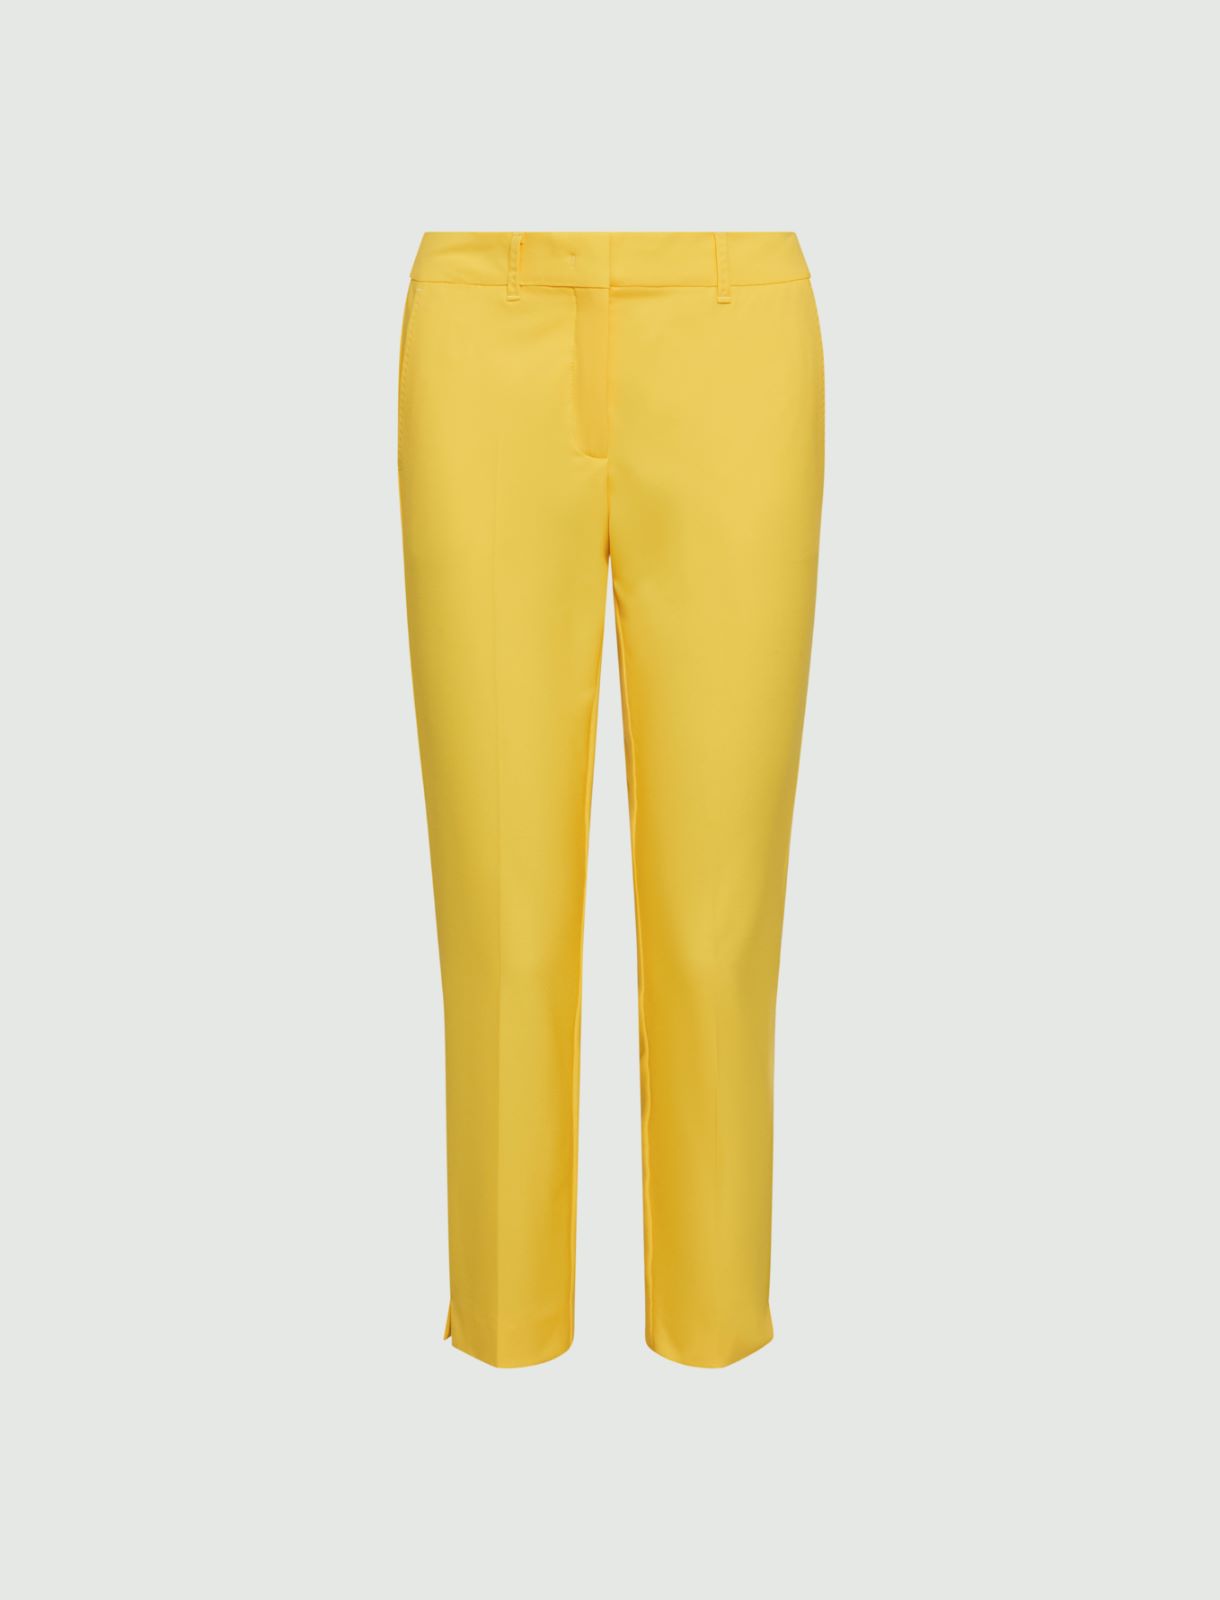 Canvas trousers - Yellow - Marina Rinaldi - 5